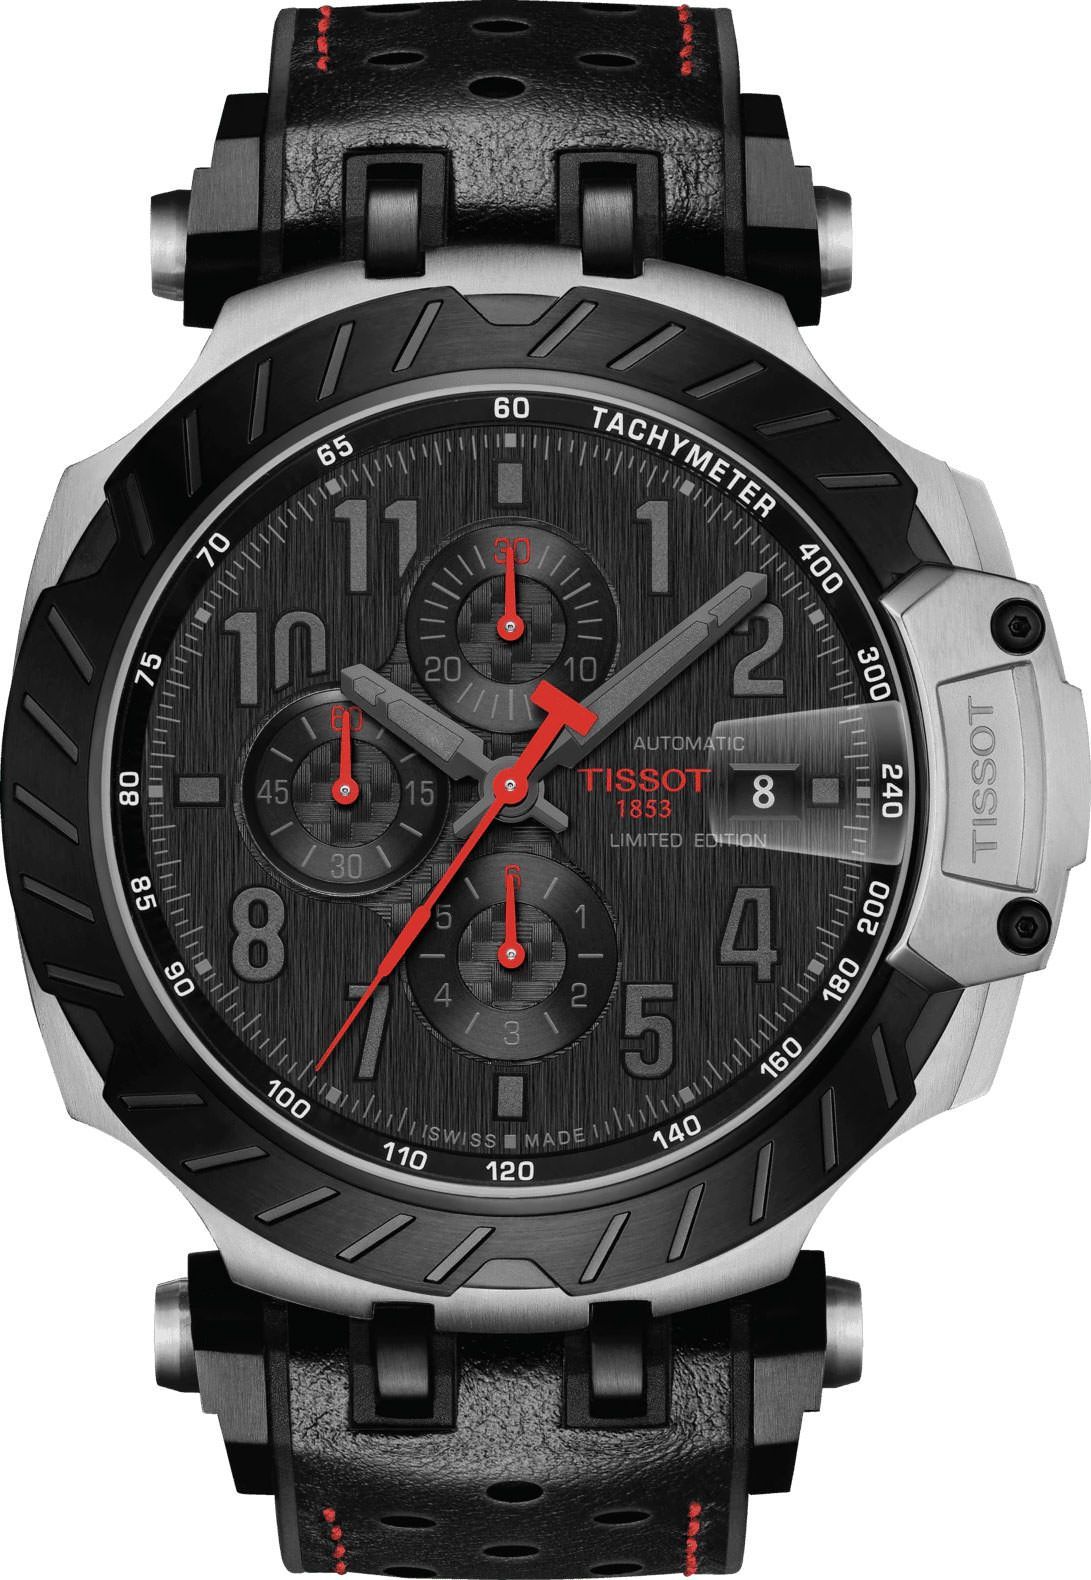 Tissot T-Sport Tissot T-Race MOTOGP Black Dial 45 mm Automatic Watch For Men - 1